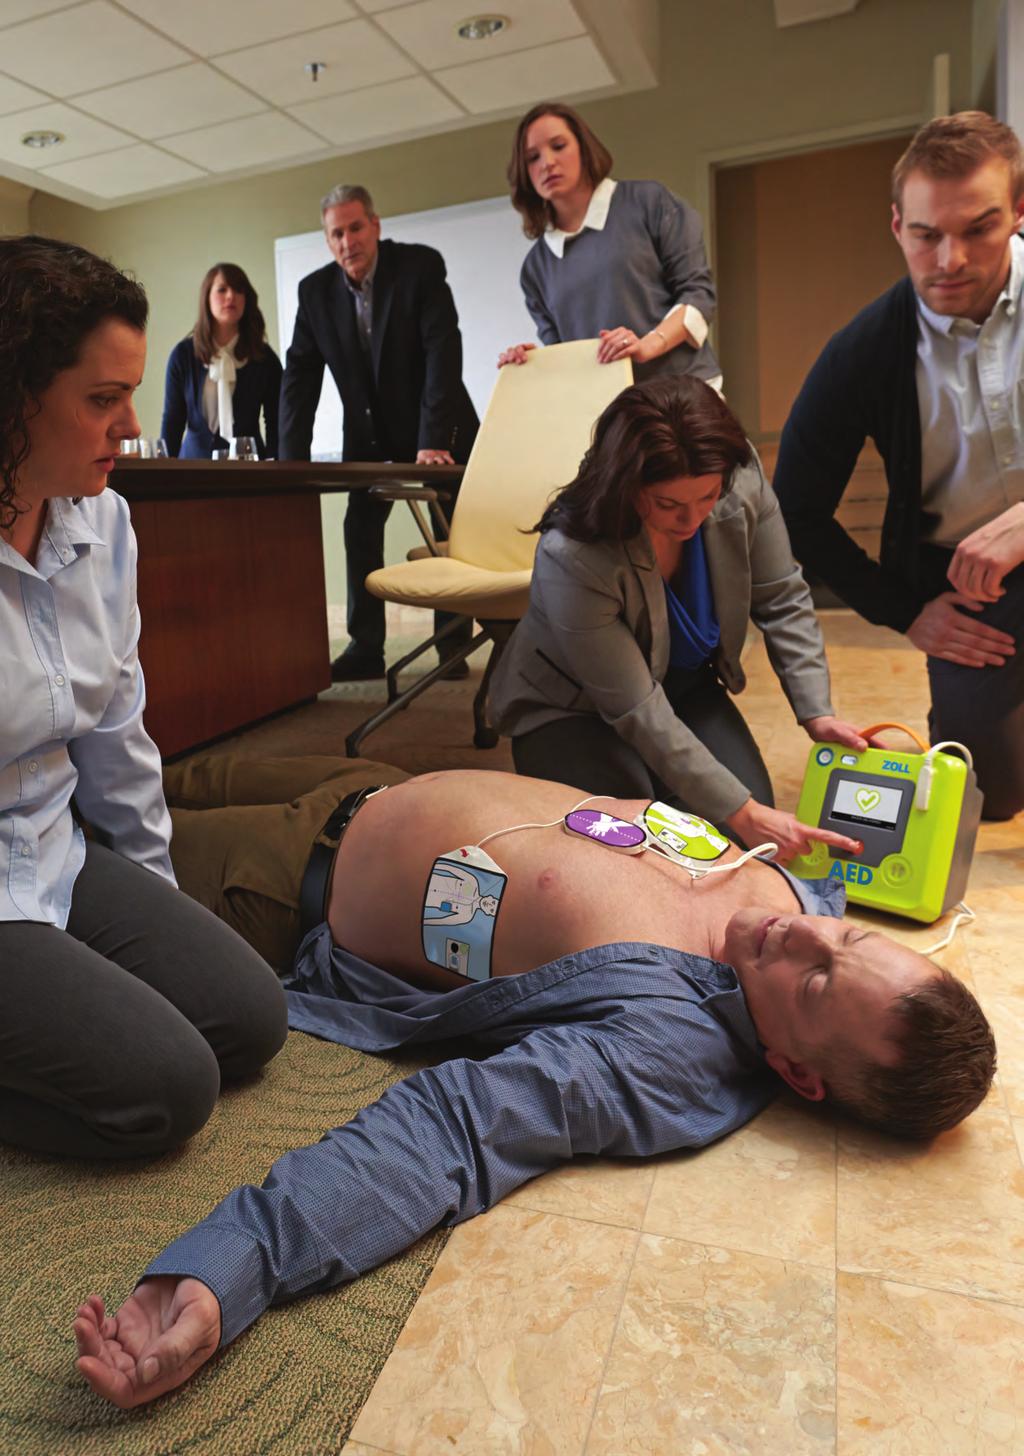 CPR-Feedback-Geräte, die Anweisungen geben, sind sinnvoll, um die Kompressionsfrequenz